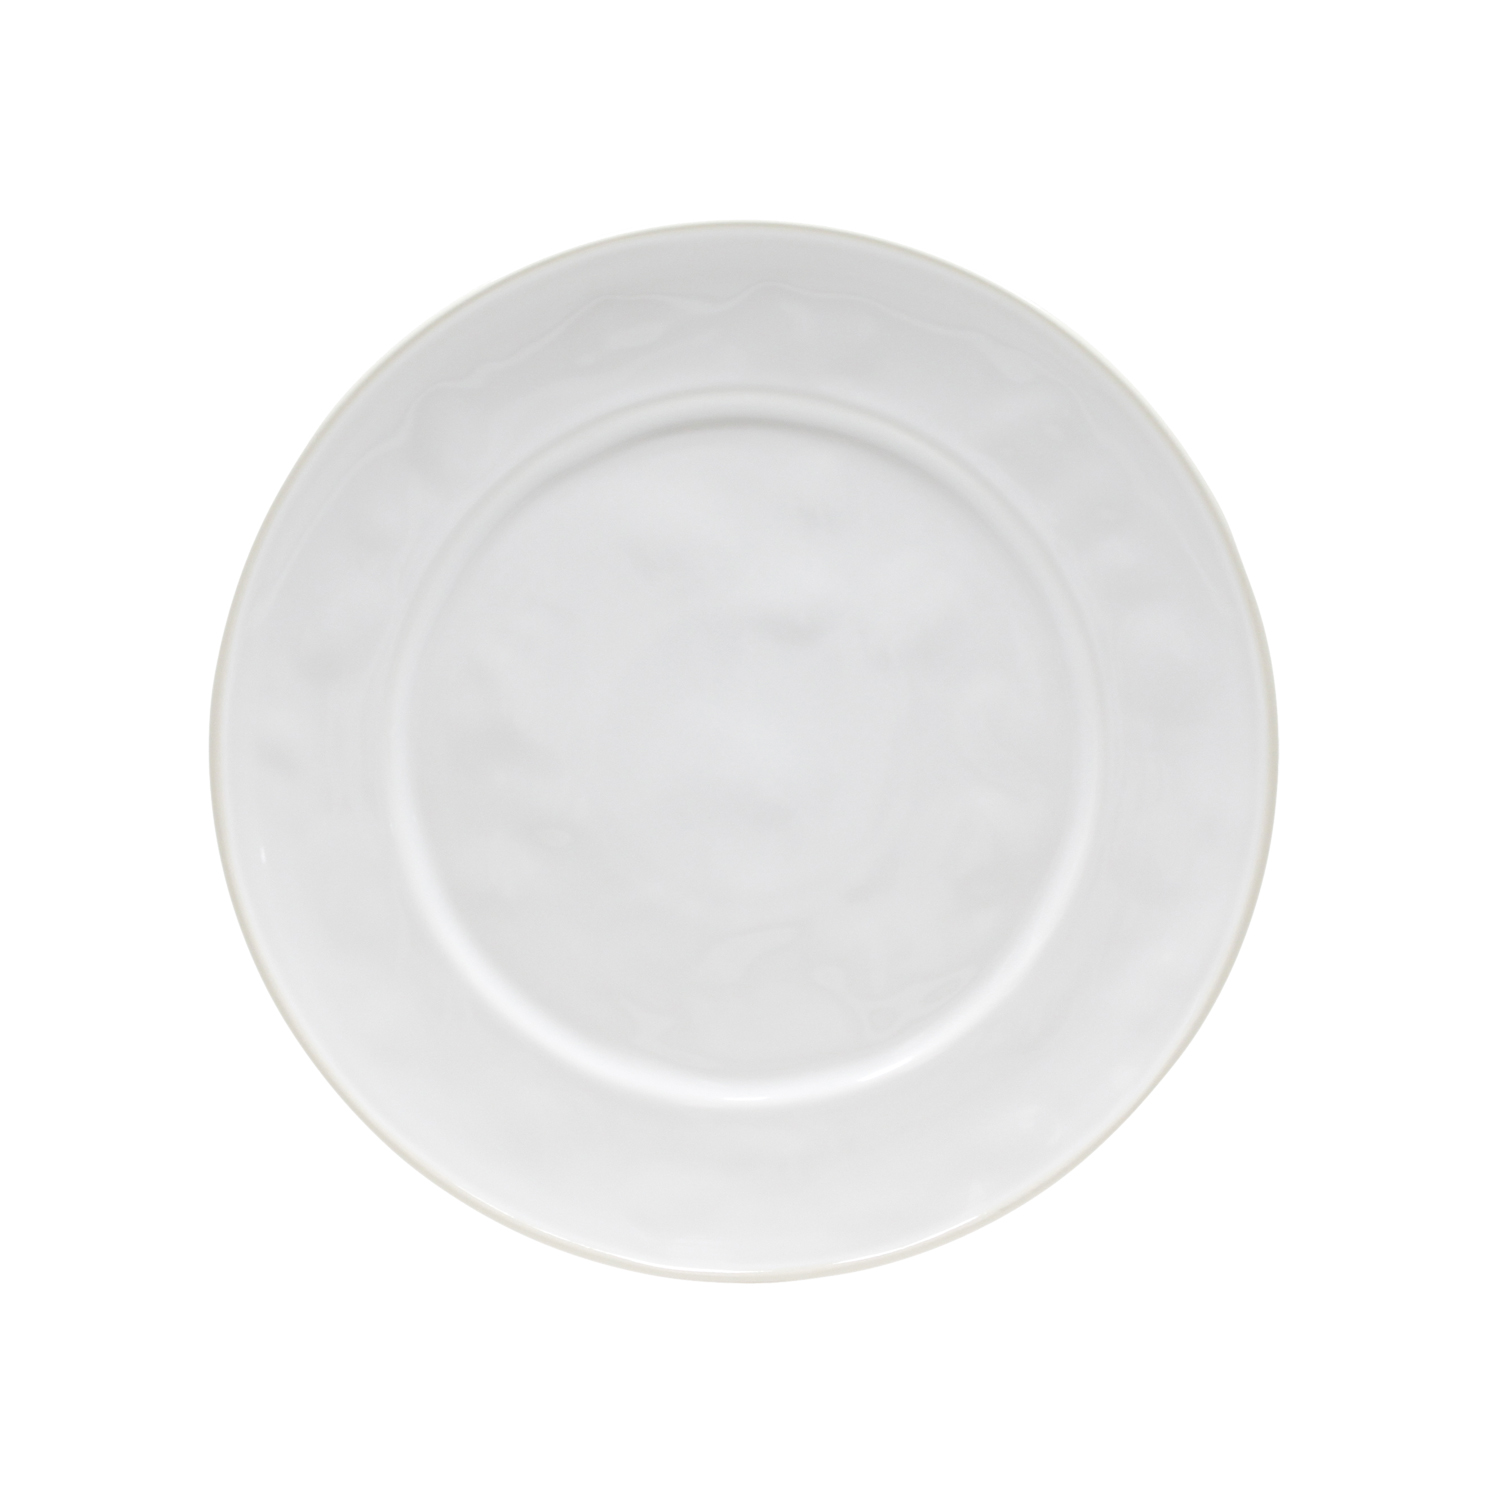 Beja White/cream Round Platter/ Charger 33cm Gift